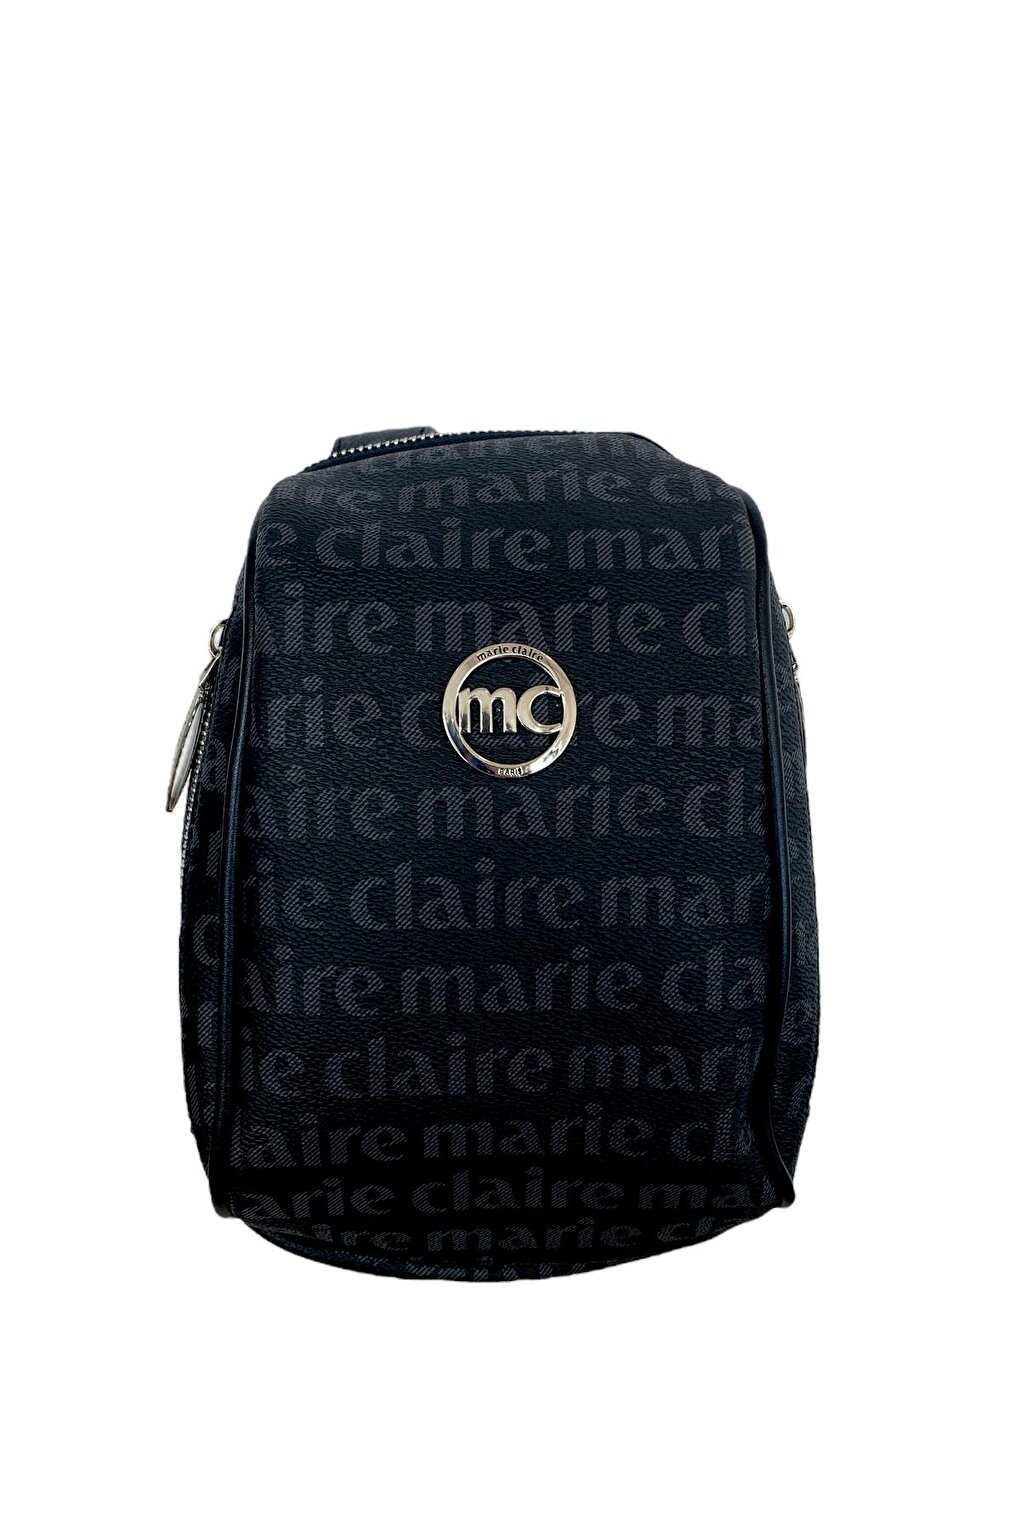 Черная женская сумка через плечо с перекрестным ремешком Dora MC231101685 Marie Claire сарафан marie by marie хлопок мини размер 40 42 черный